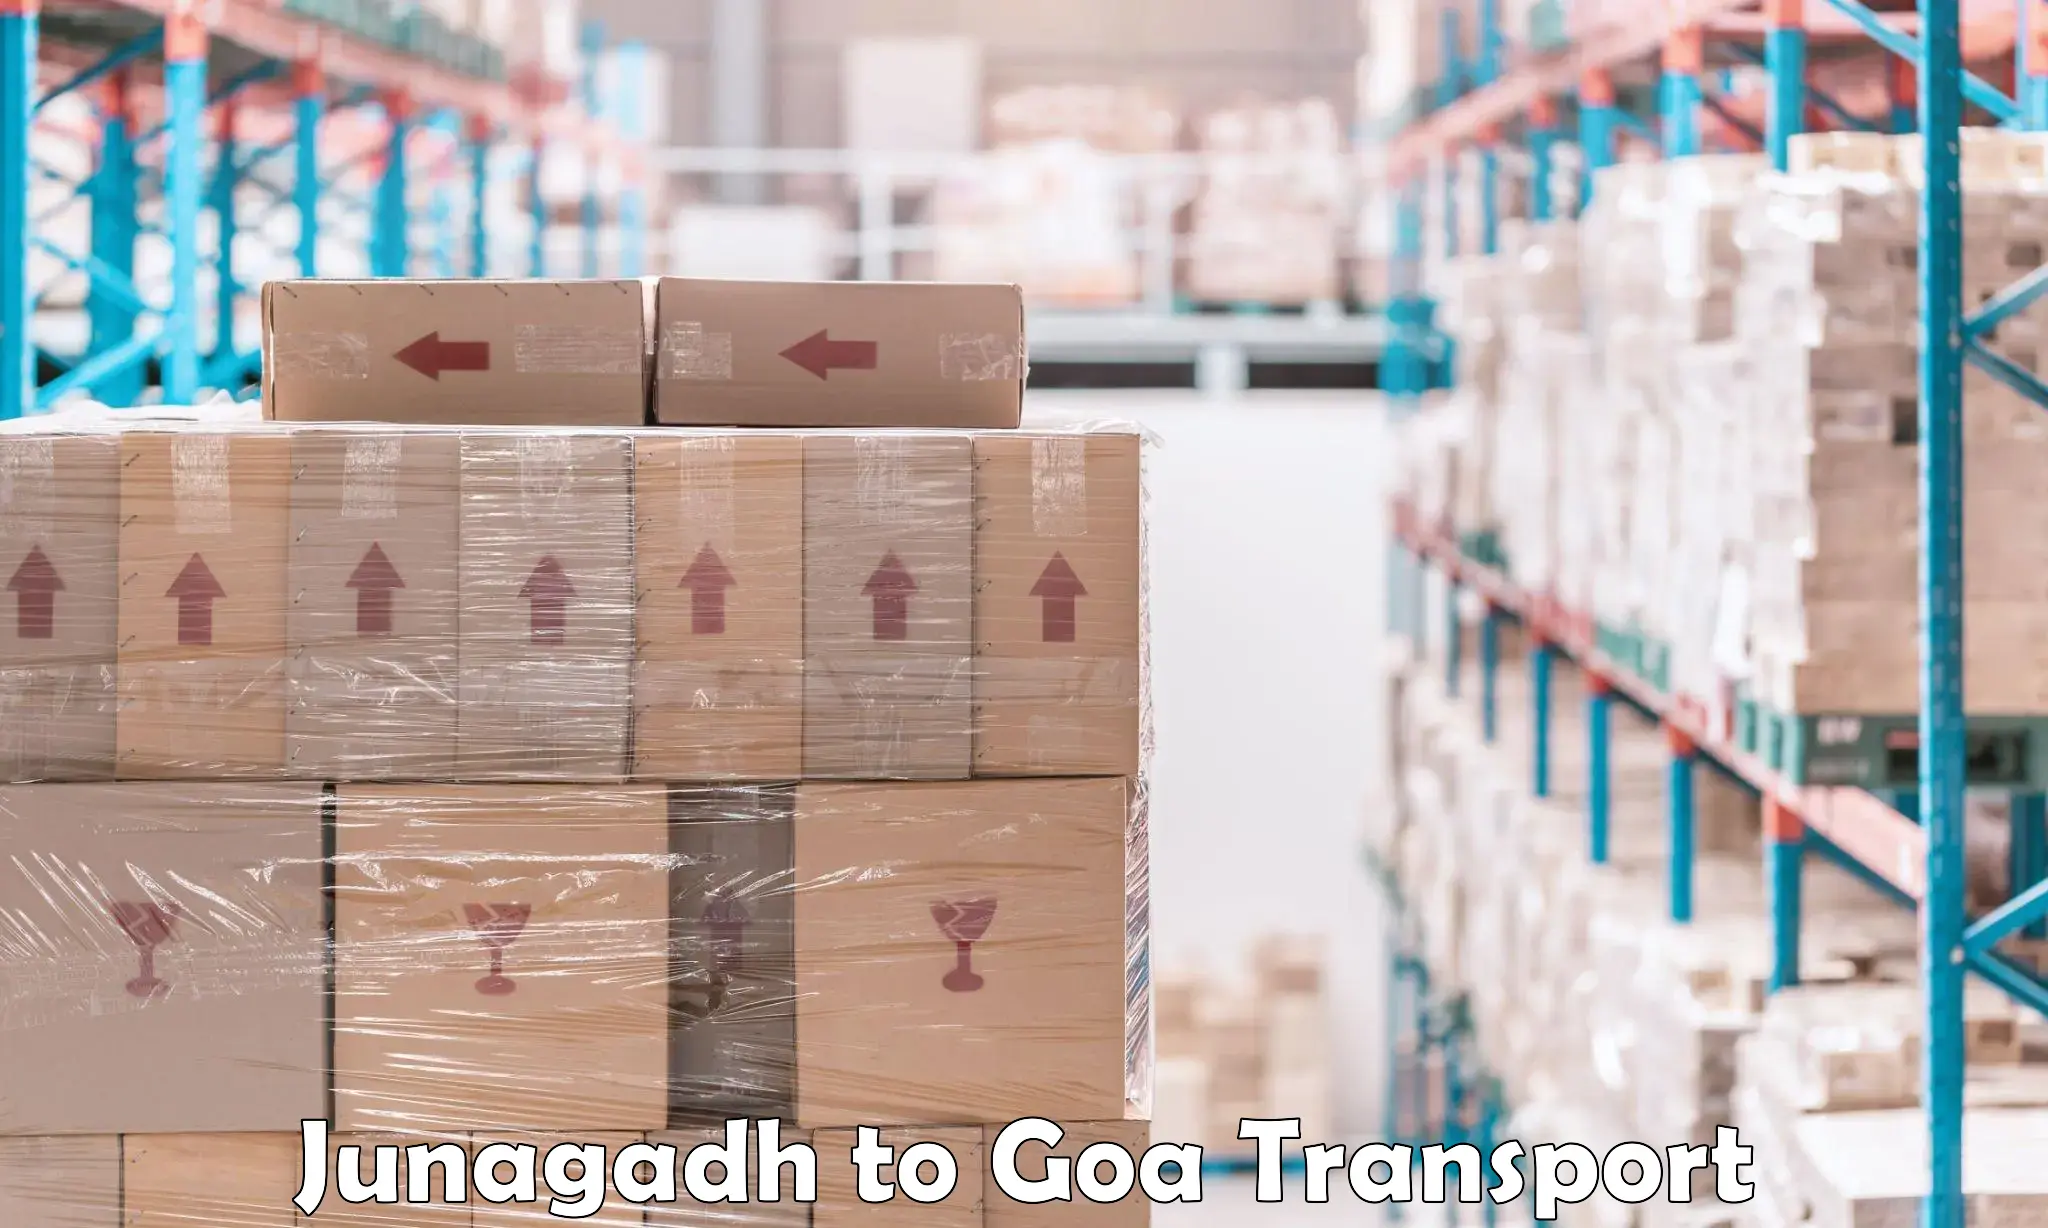 Commercial transport service Junagadh to Vasco da Gama